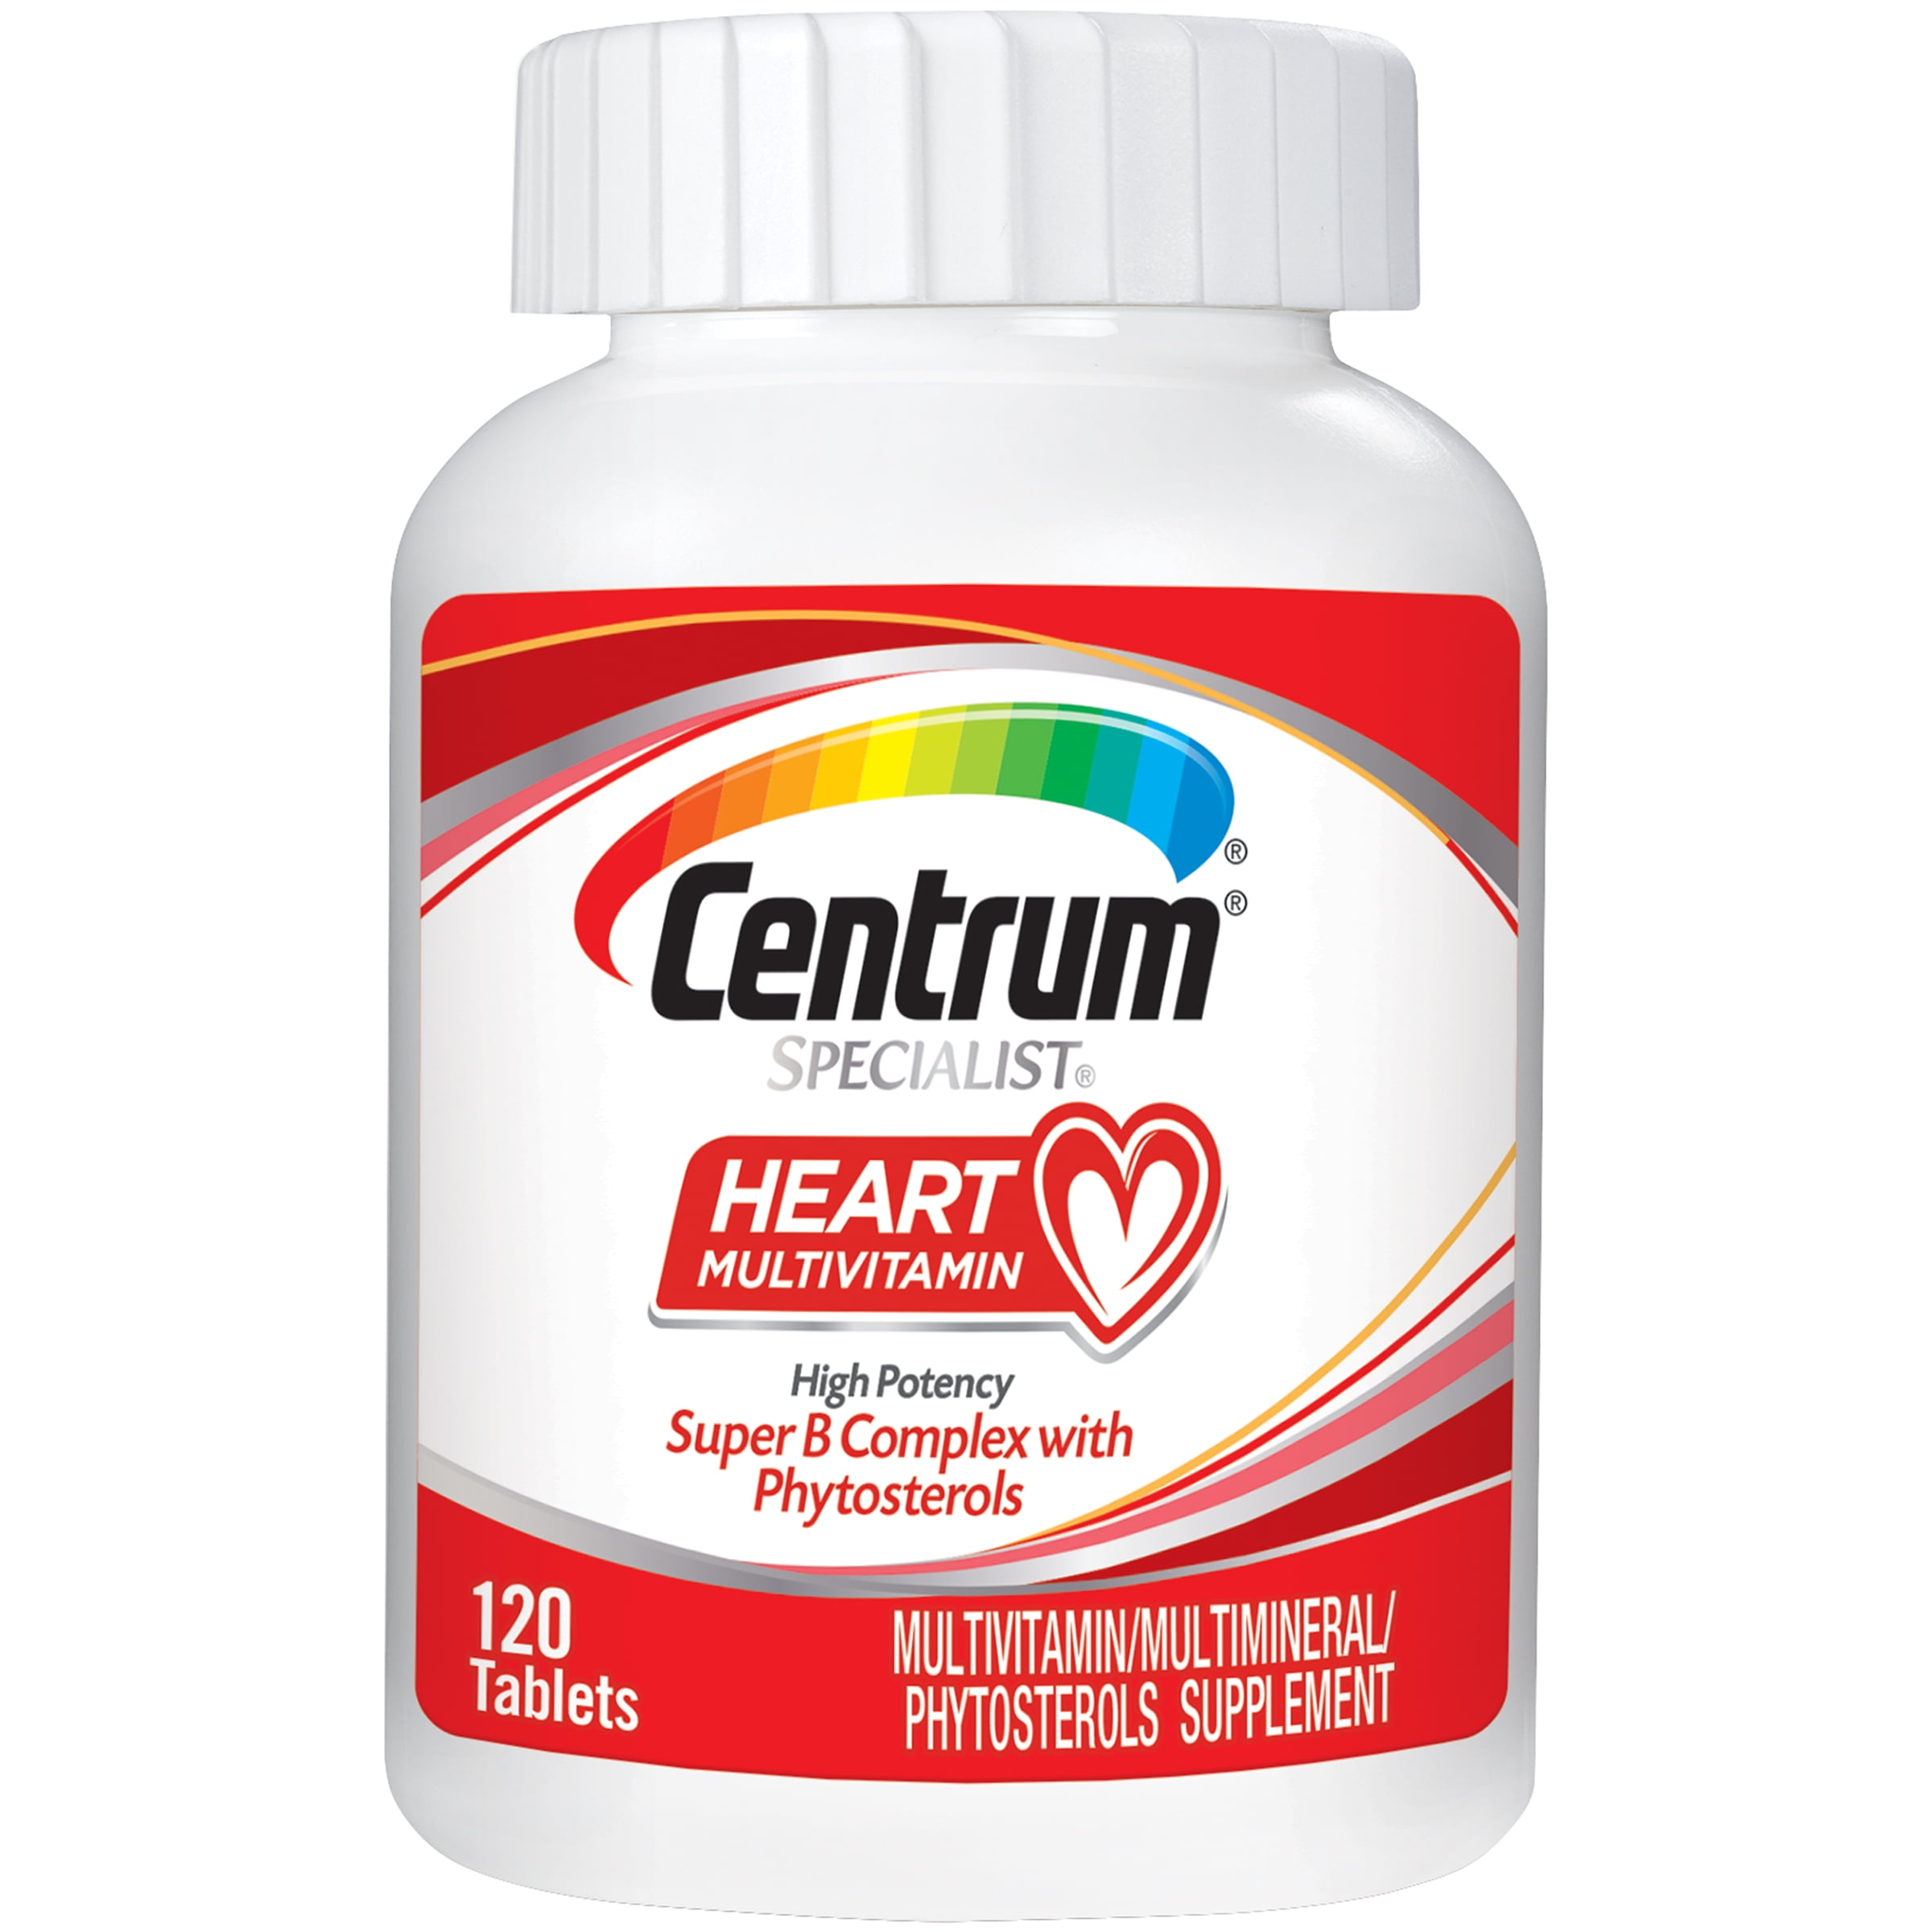 Centrum Specialist Heart Health Vitamins, Multivitamin/Multimineral